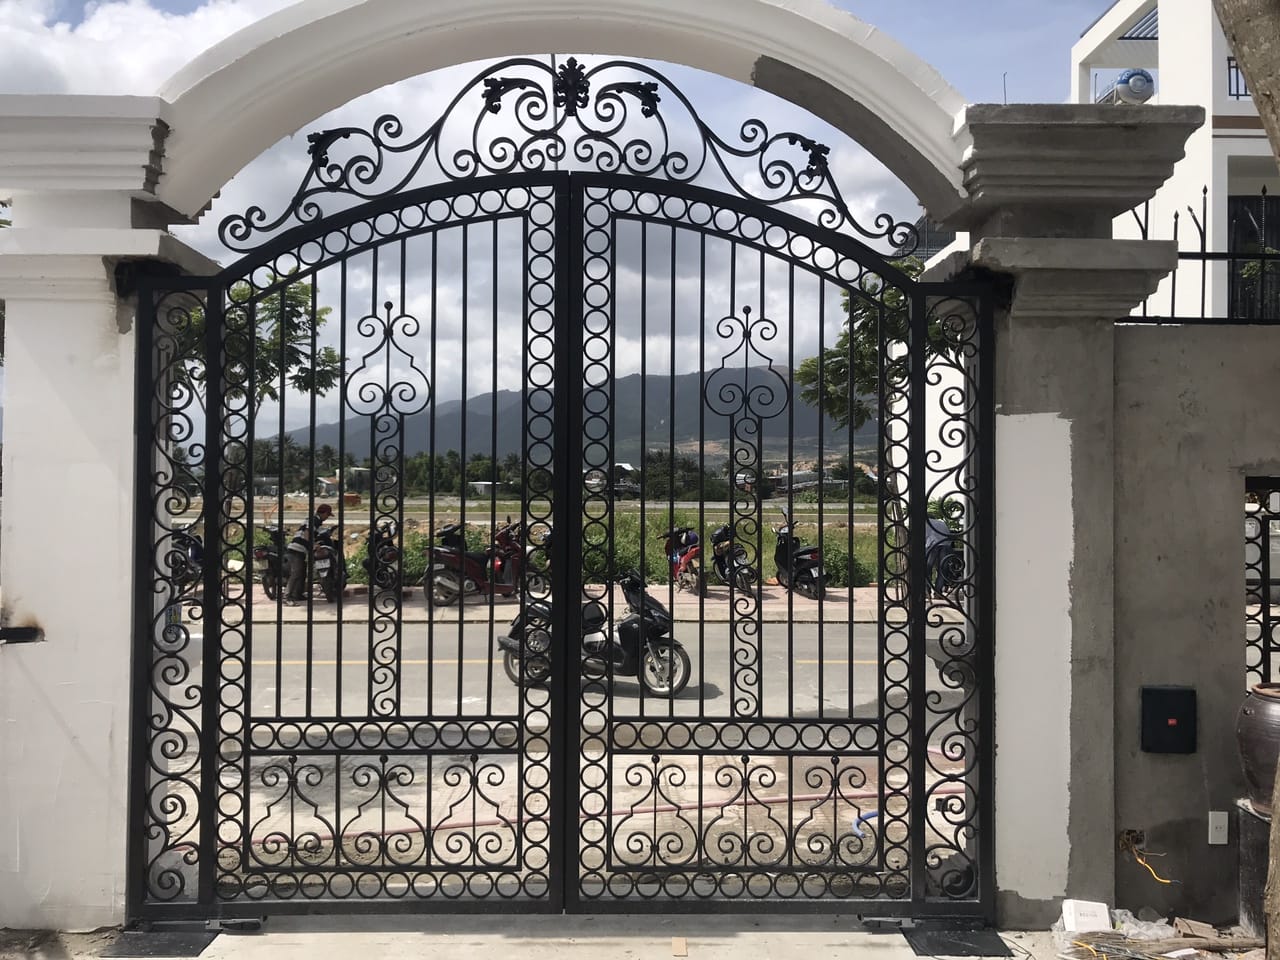 Lắp đặt - sửa chữa - bảo trì cửa cổng tự động ở Đà Lạt - Lâm Đồng